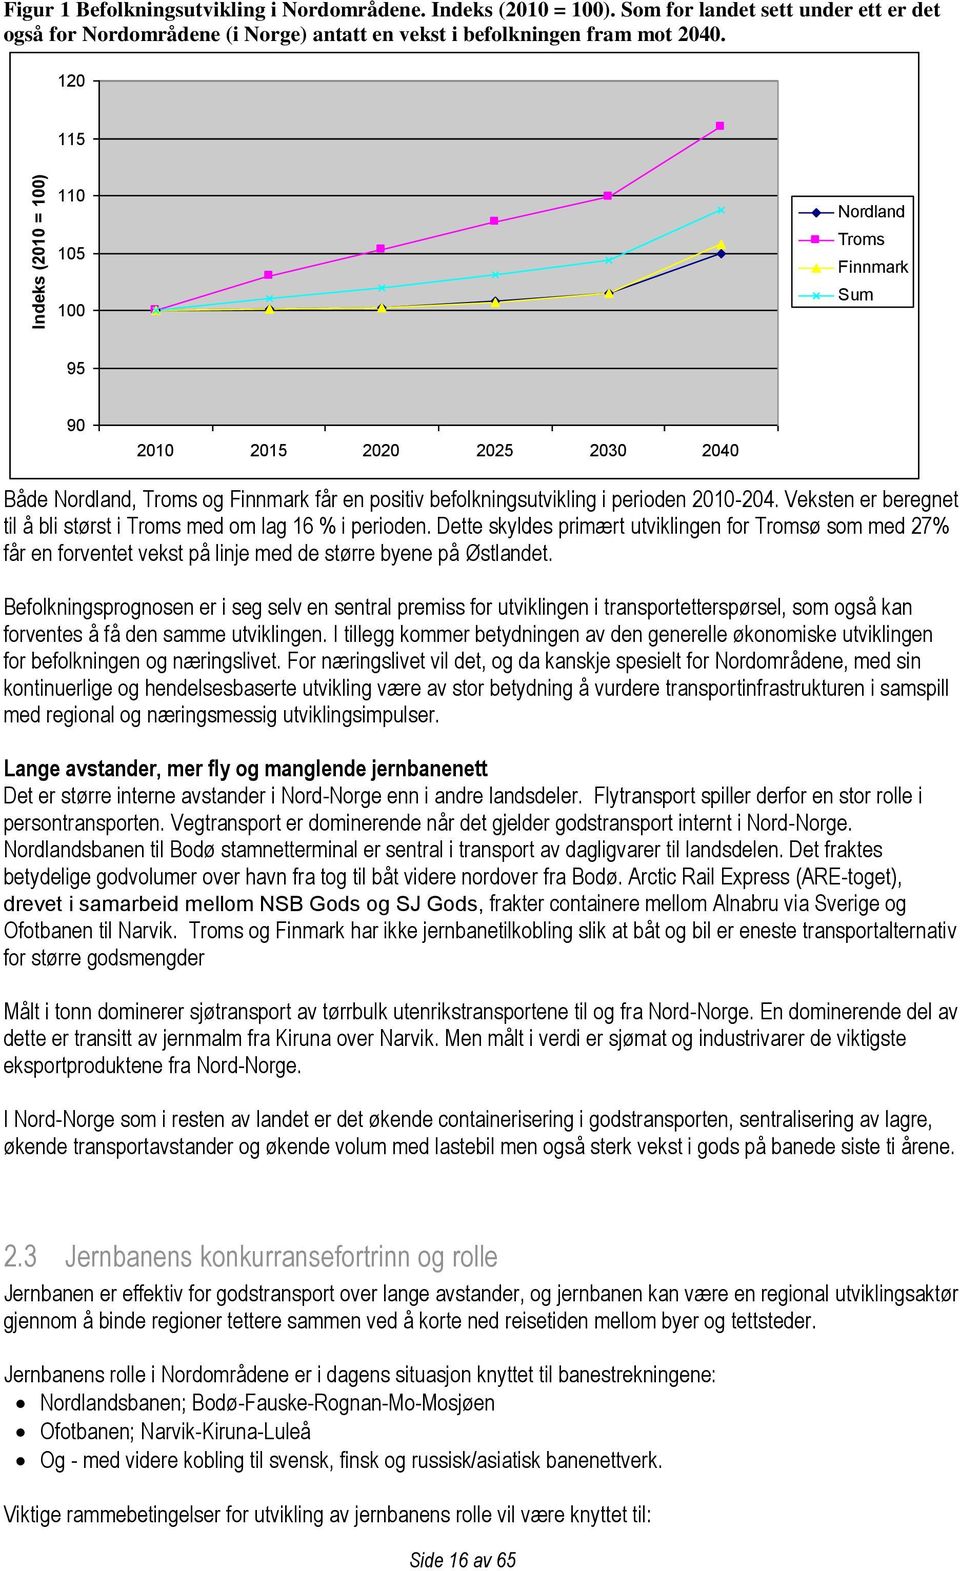 Veksten er beregnet til å bli størst i Troms med om lag 16 % i perioden. Dette skyldes primært utviklingen for Tromsø som med 27% får en forventet vekst på linje med de større byene på Østlandet.